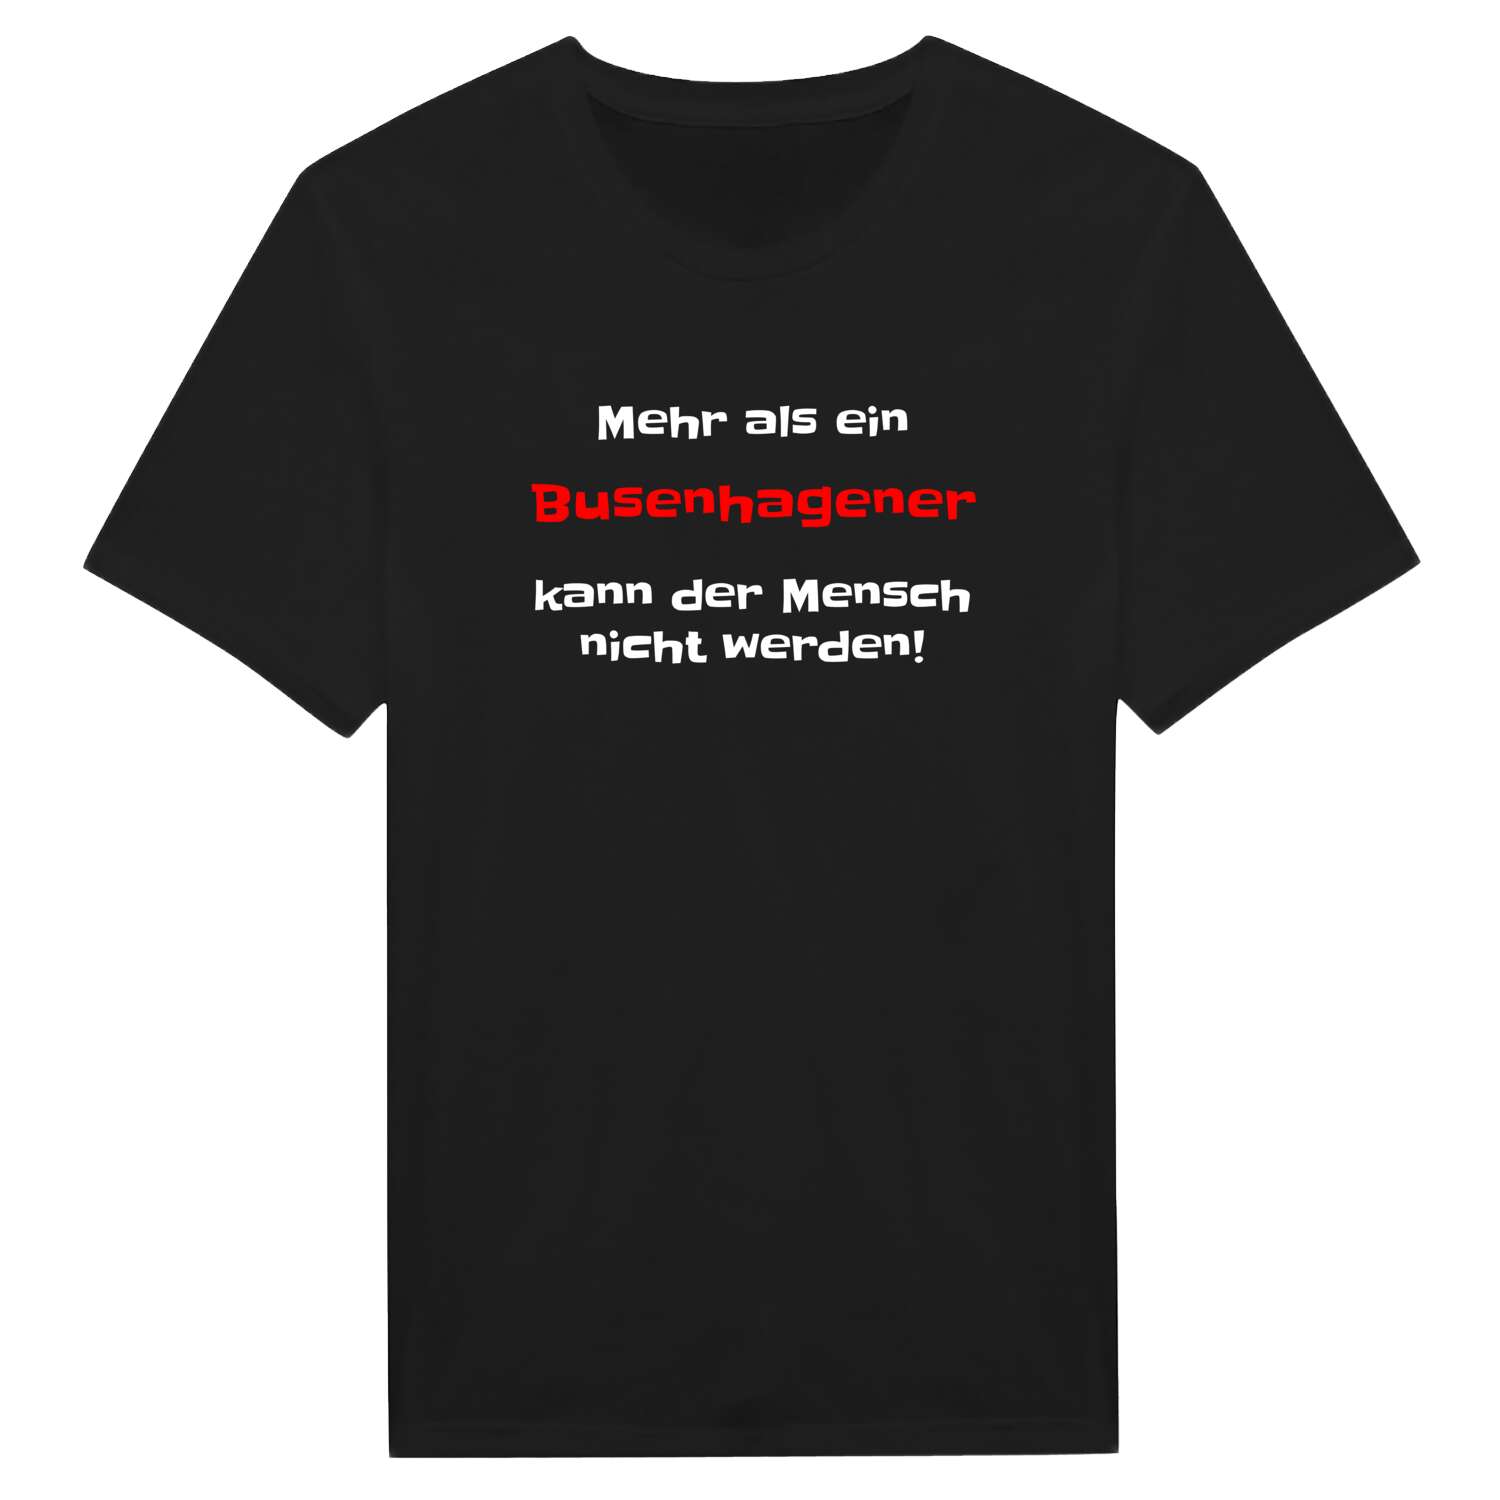 Busenhagen T-Shirt »Mehr als ein«